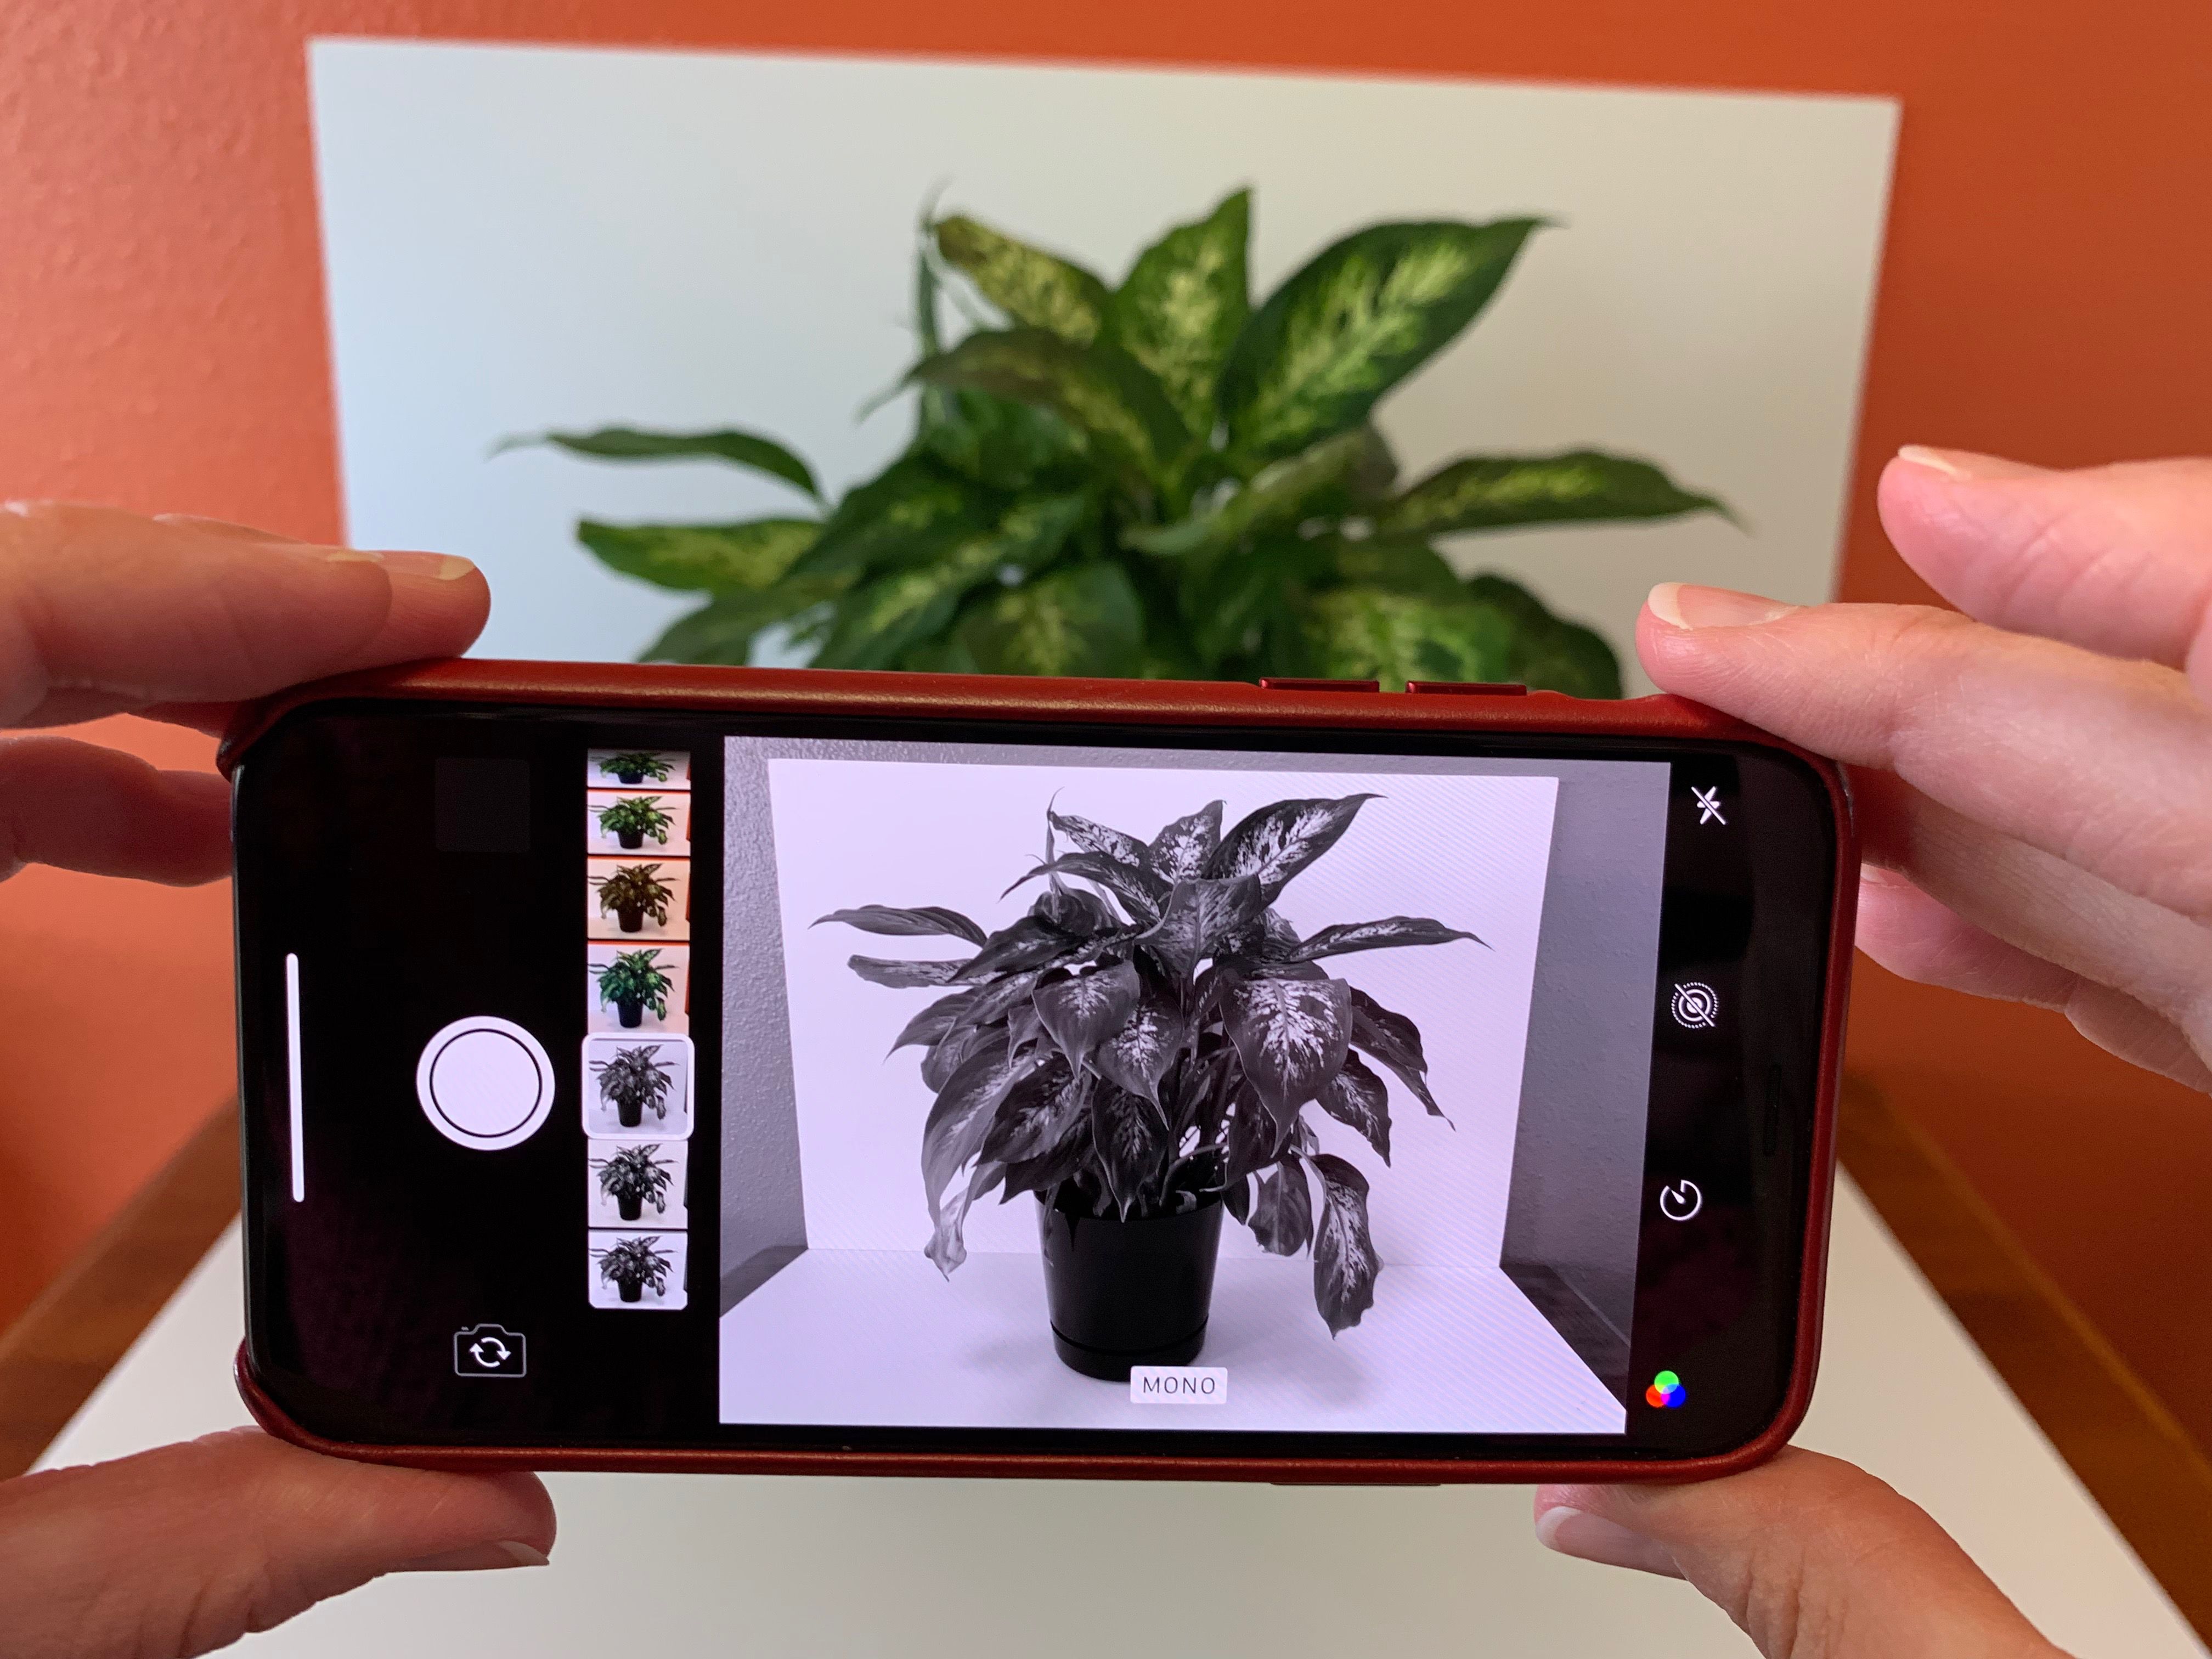 Foto do iPhone com filtro MONO ativo, mostra o tema de uma planta em tons variados, do branco ao preto